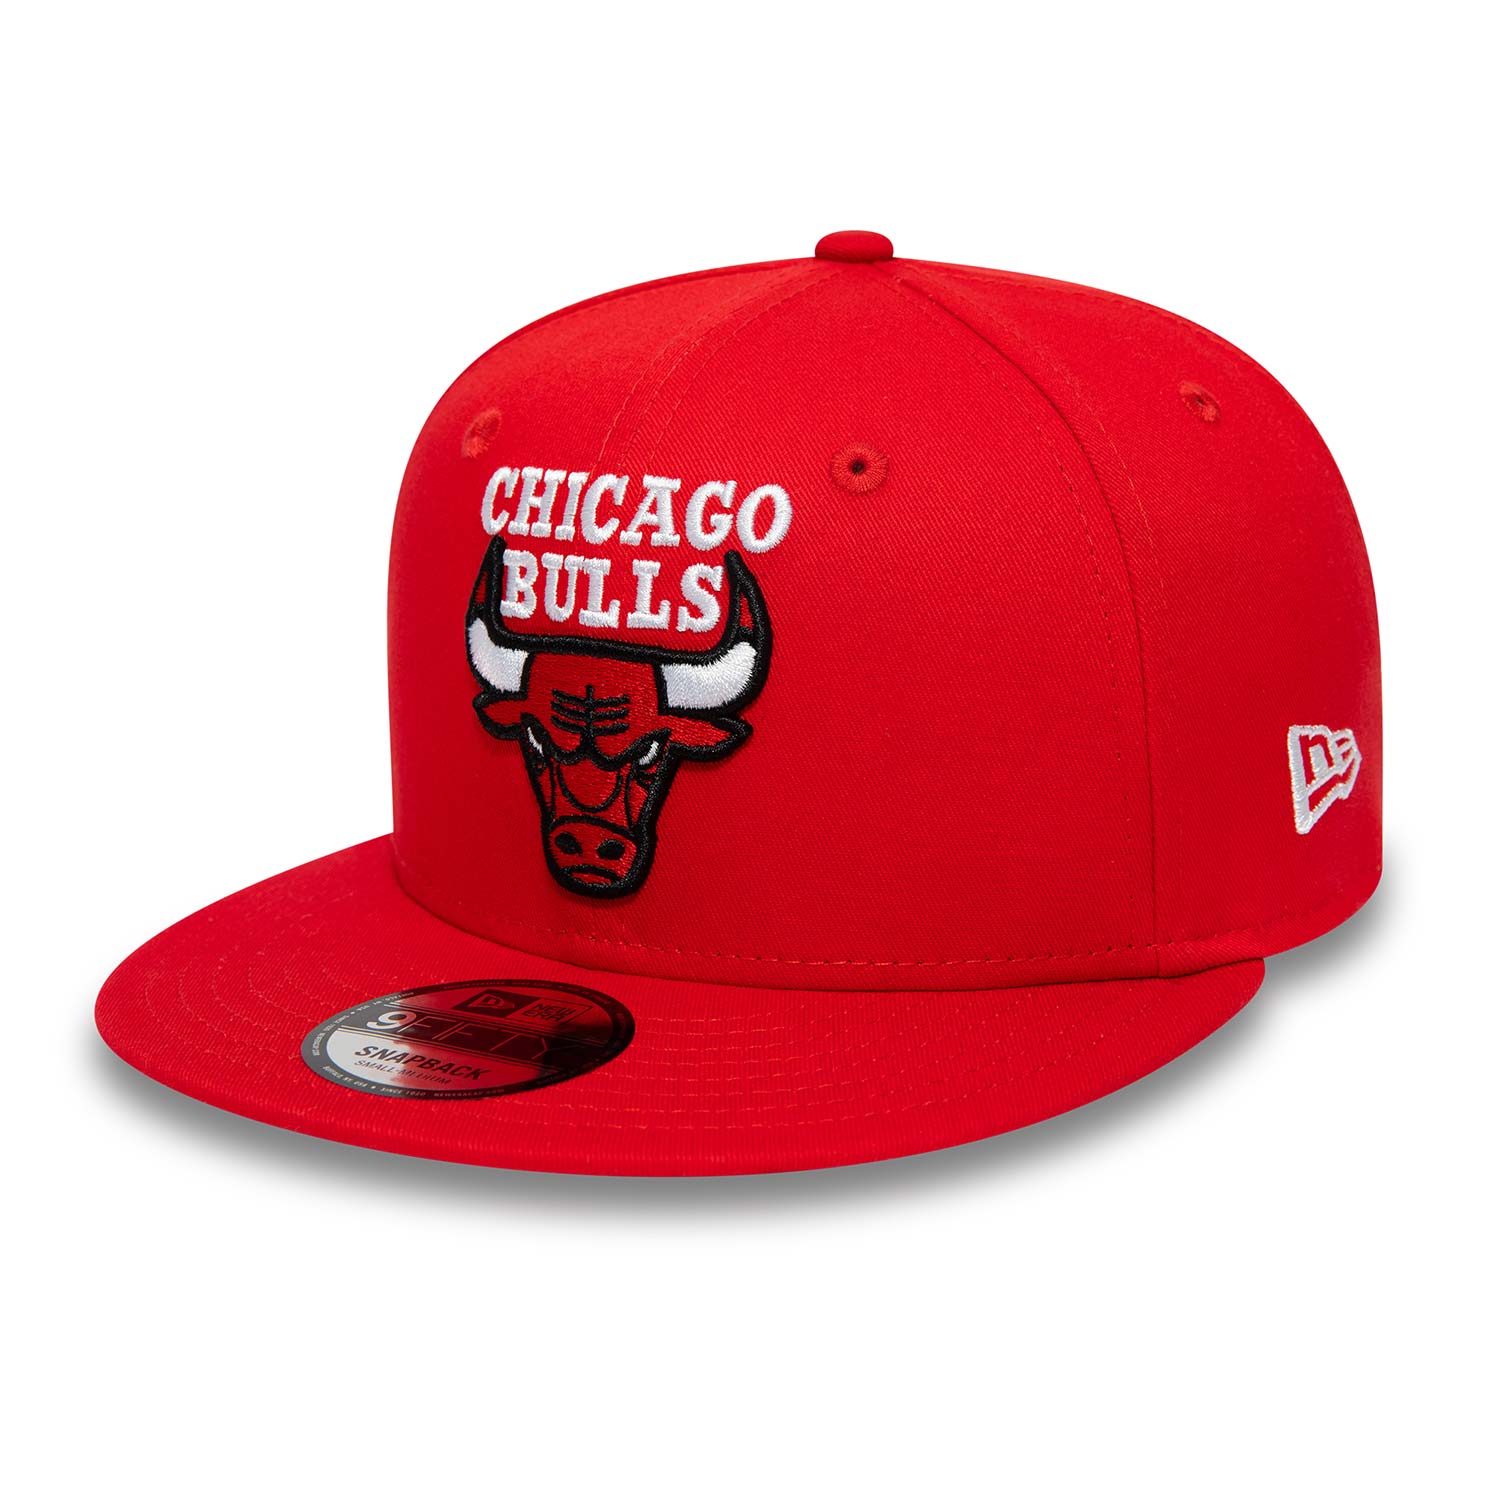 Chicago Bulls NBA Paris Games Red 9FIFTY Snapback Cap